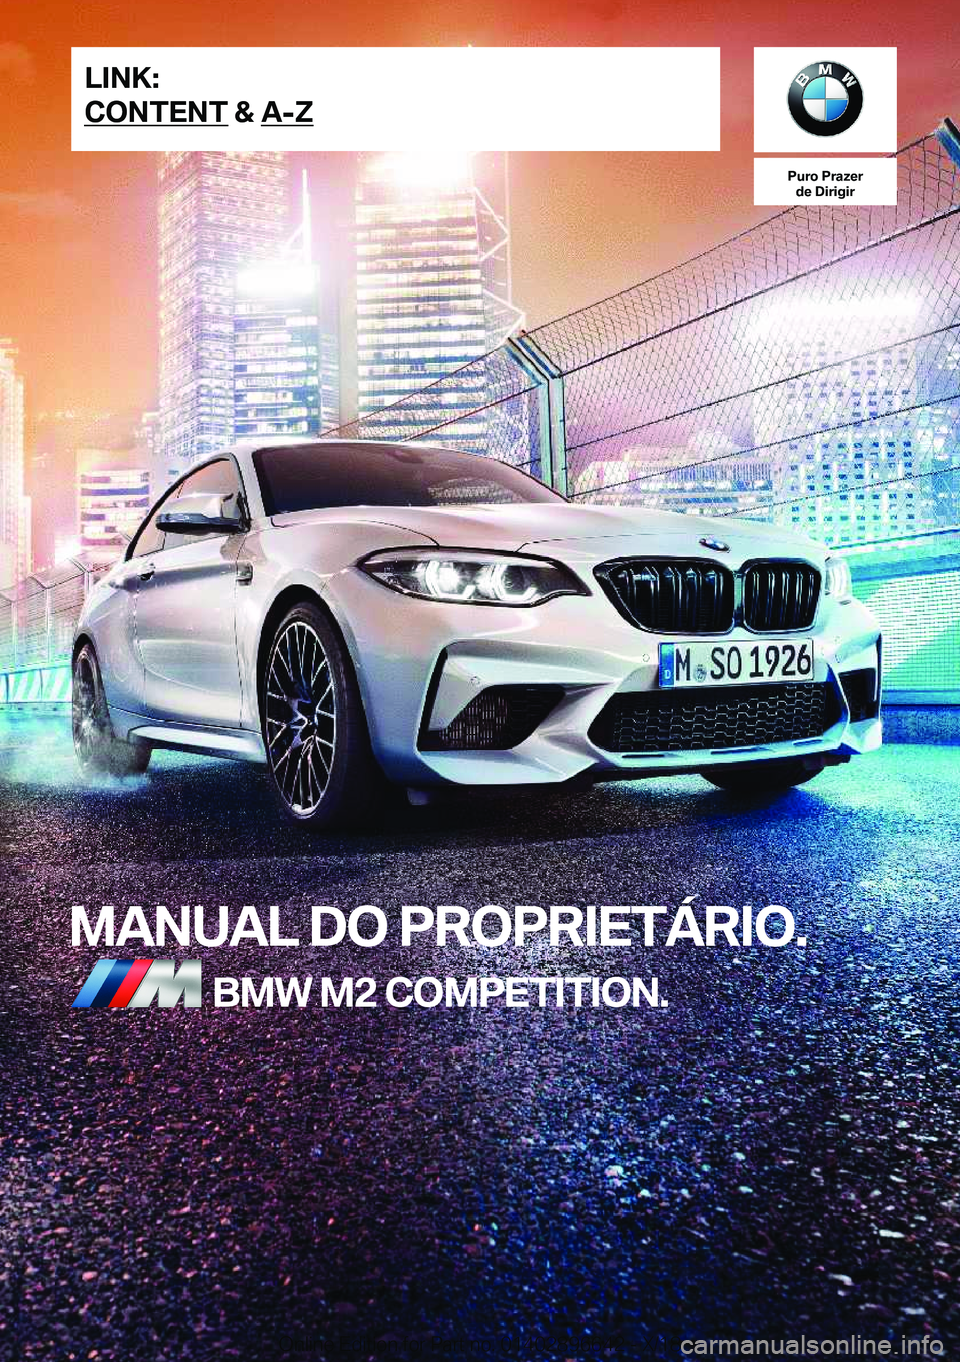 BMW M2 2019  Manual do condutor (in Portuguese) �P�u�r�o��P�r�a�z�e�r�d�e��D�i�r�i�g�i�r
�M�A�N�U�A�L��D�O��P�R�O�P�R�I�E�T�Á�R�I�O�.�B�M�W��M�2��C�O�M�P�E�T�I�T�I�O�N�.�L�I�N�K�:
�C�O�N�T�E�N�T��&��A�-�;�O�n�l�i�n�e��E�d�i�t�i�o�n��f�o�